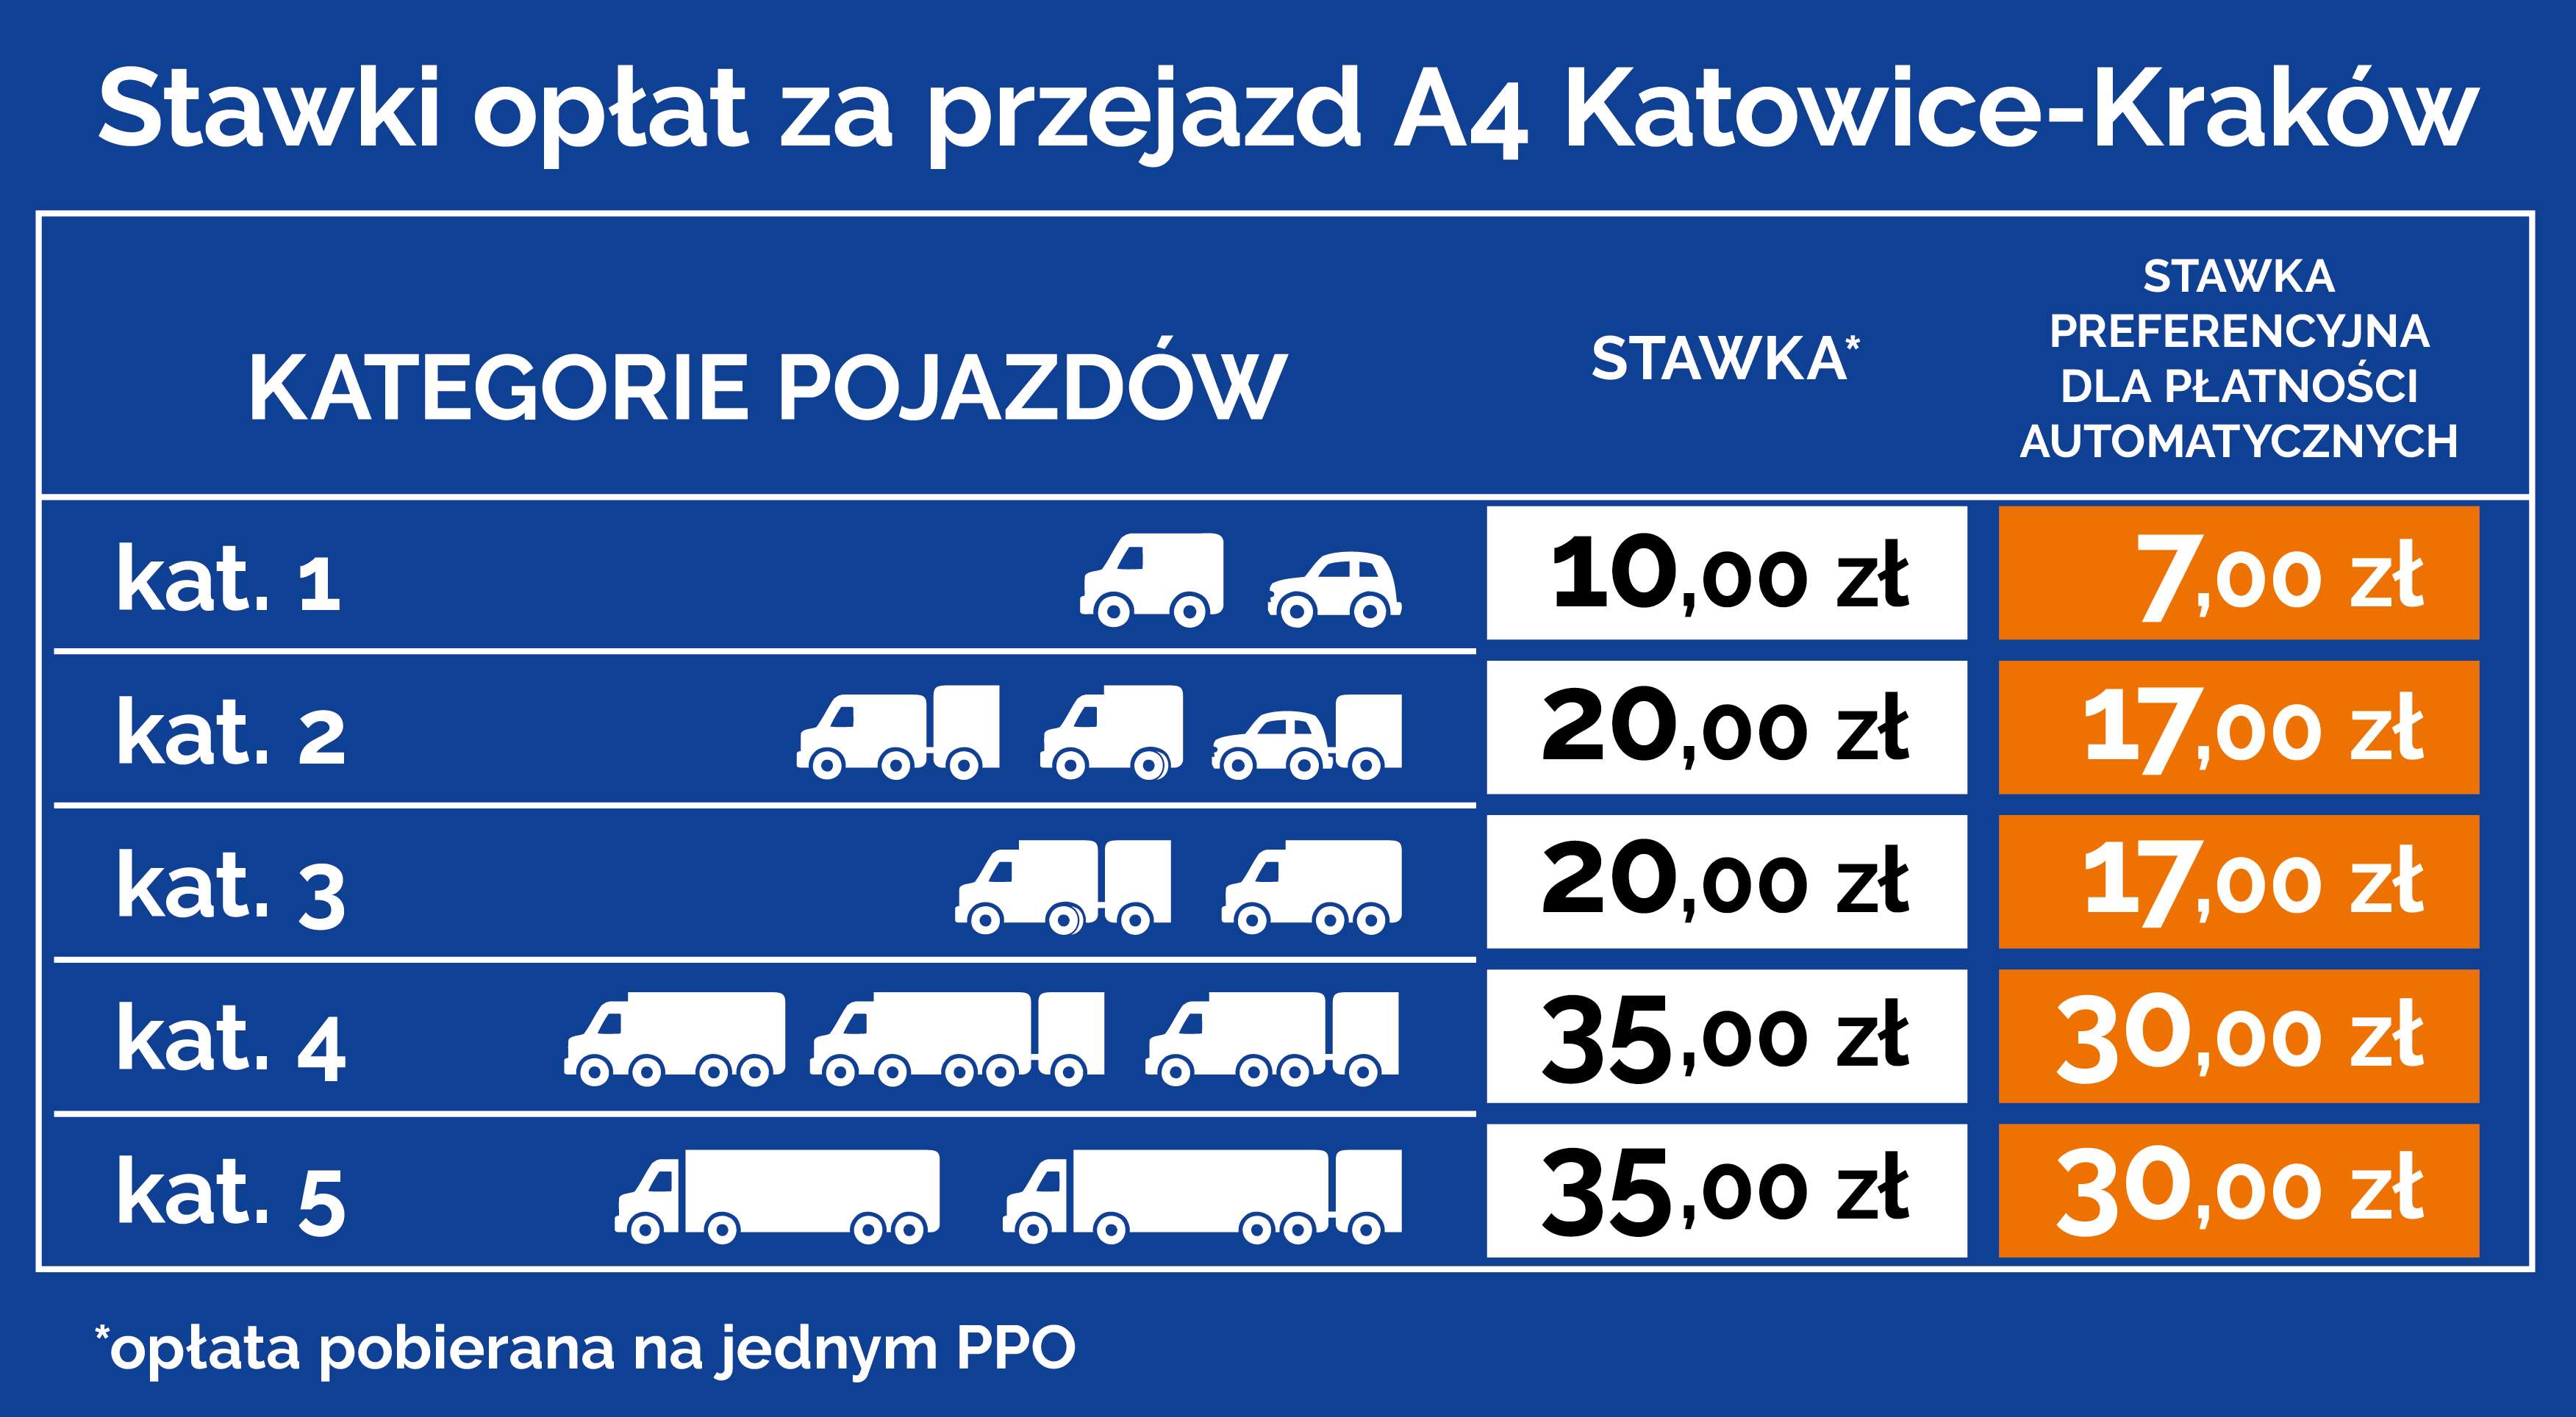 cennik preferencyjne stawki a4 katowice krakow 2020